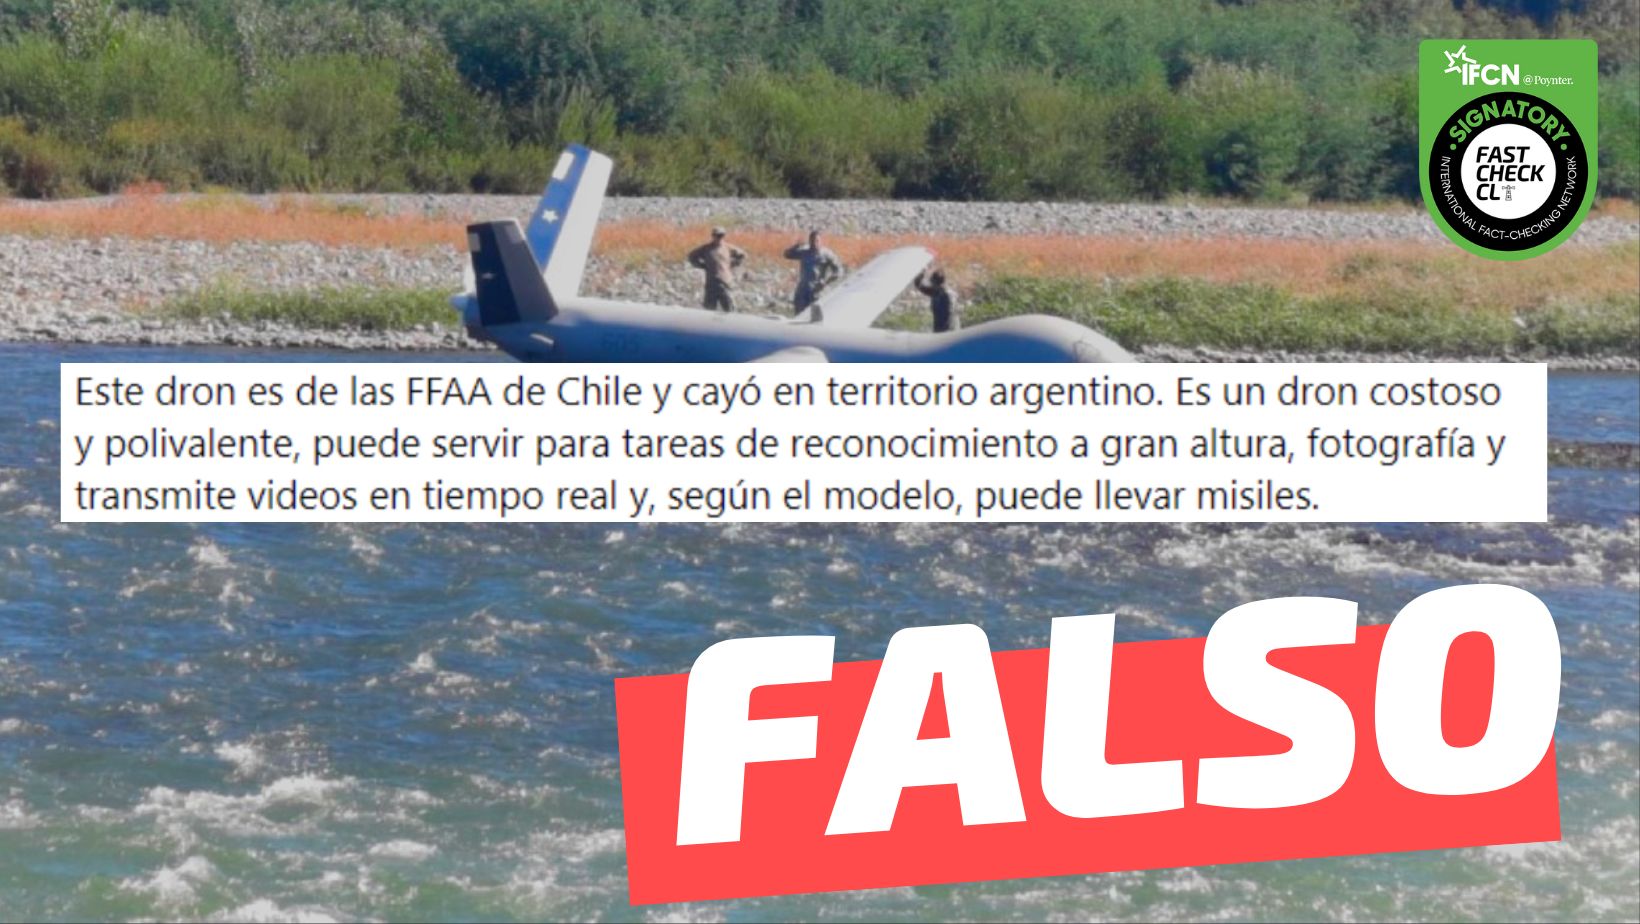 You are currently viewing (Imagen) “Este dron es de las FF.AA. de Chile y cay贸 en territorio argentino”: #Falso